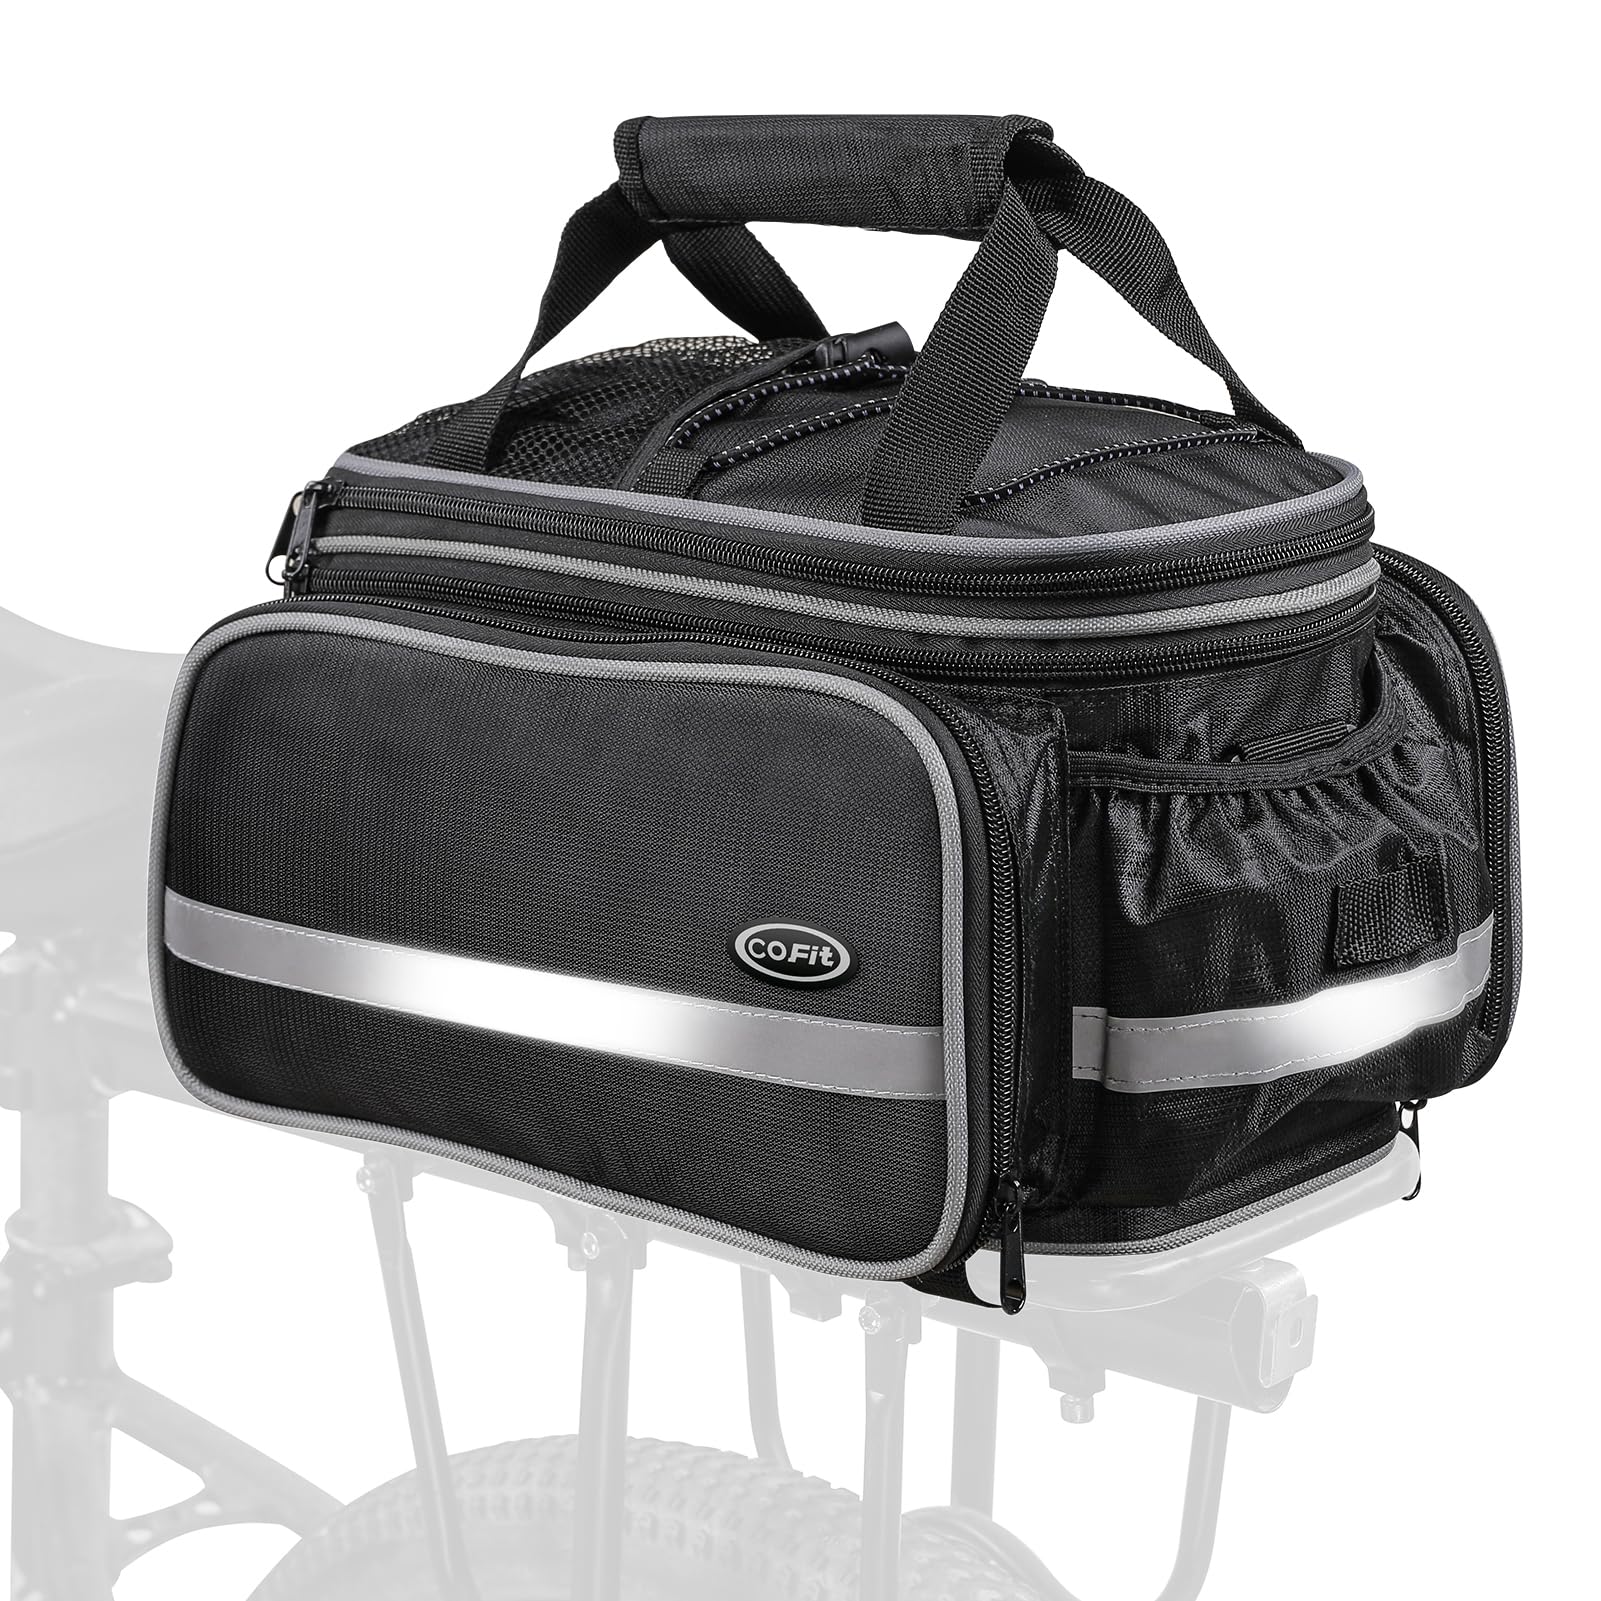 COFIT Fahrradtasche 25L, Fahrrad Satteltasche Gepäcktasche Gepäckträger Tasche Rucksack Seitentasche mit Wasserfester, Reflektierender und Regenschutzdeckel von COFIT